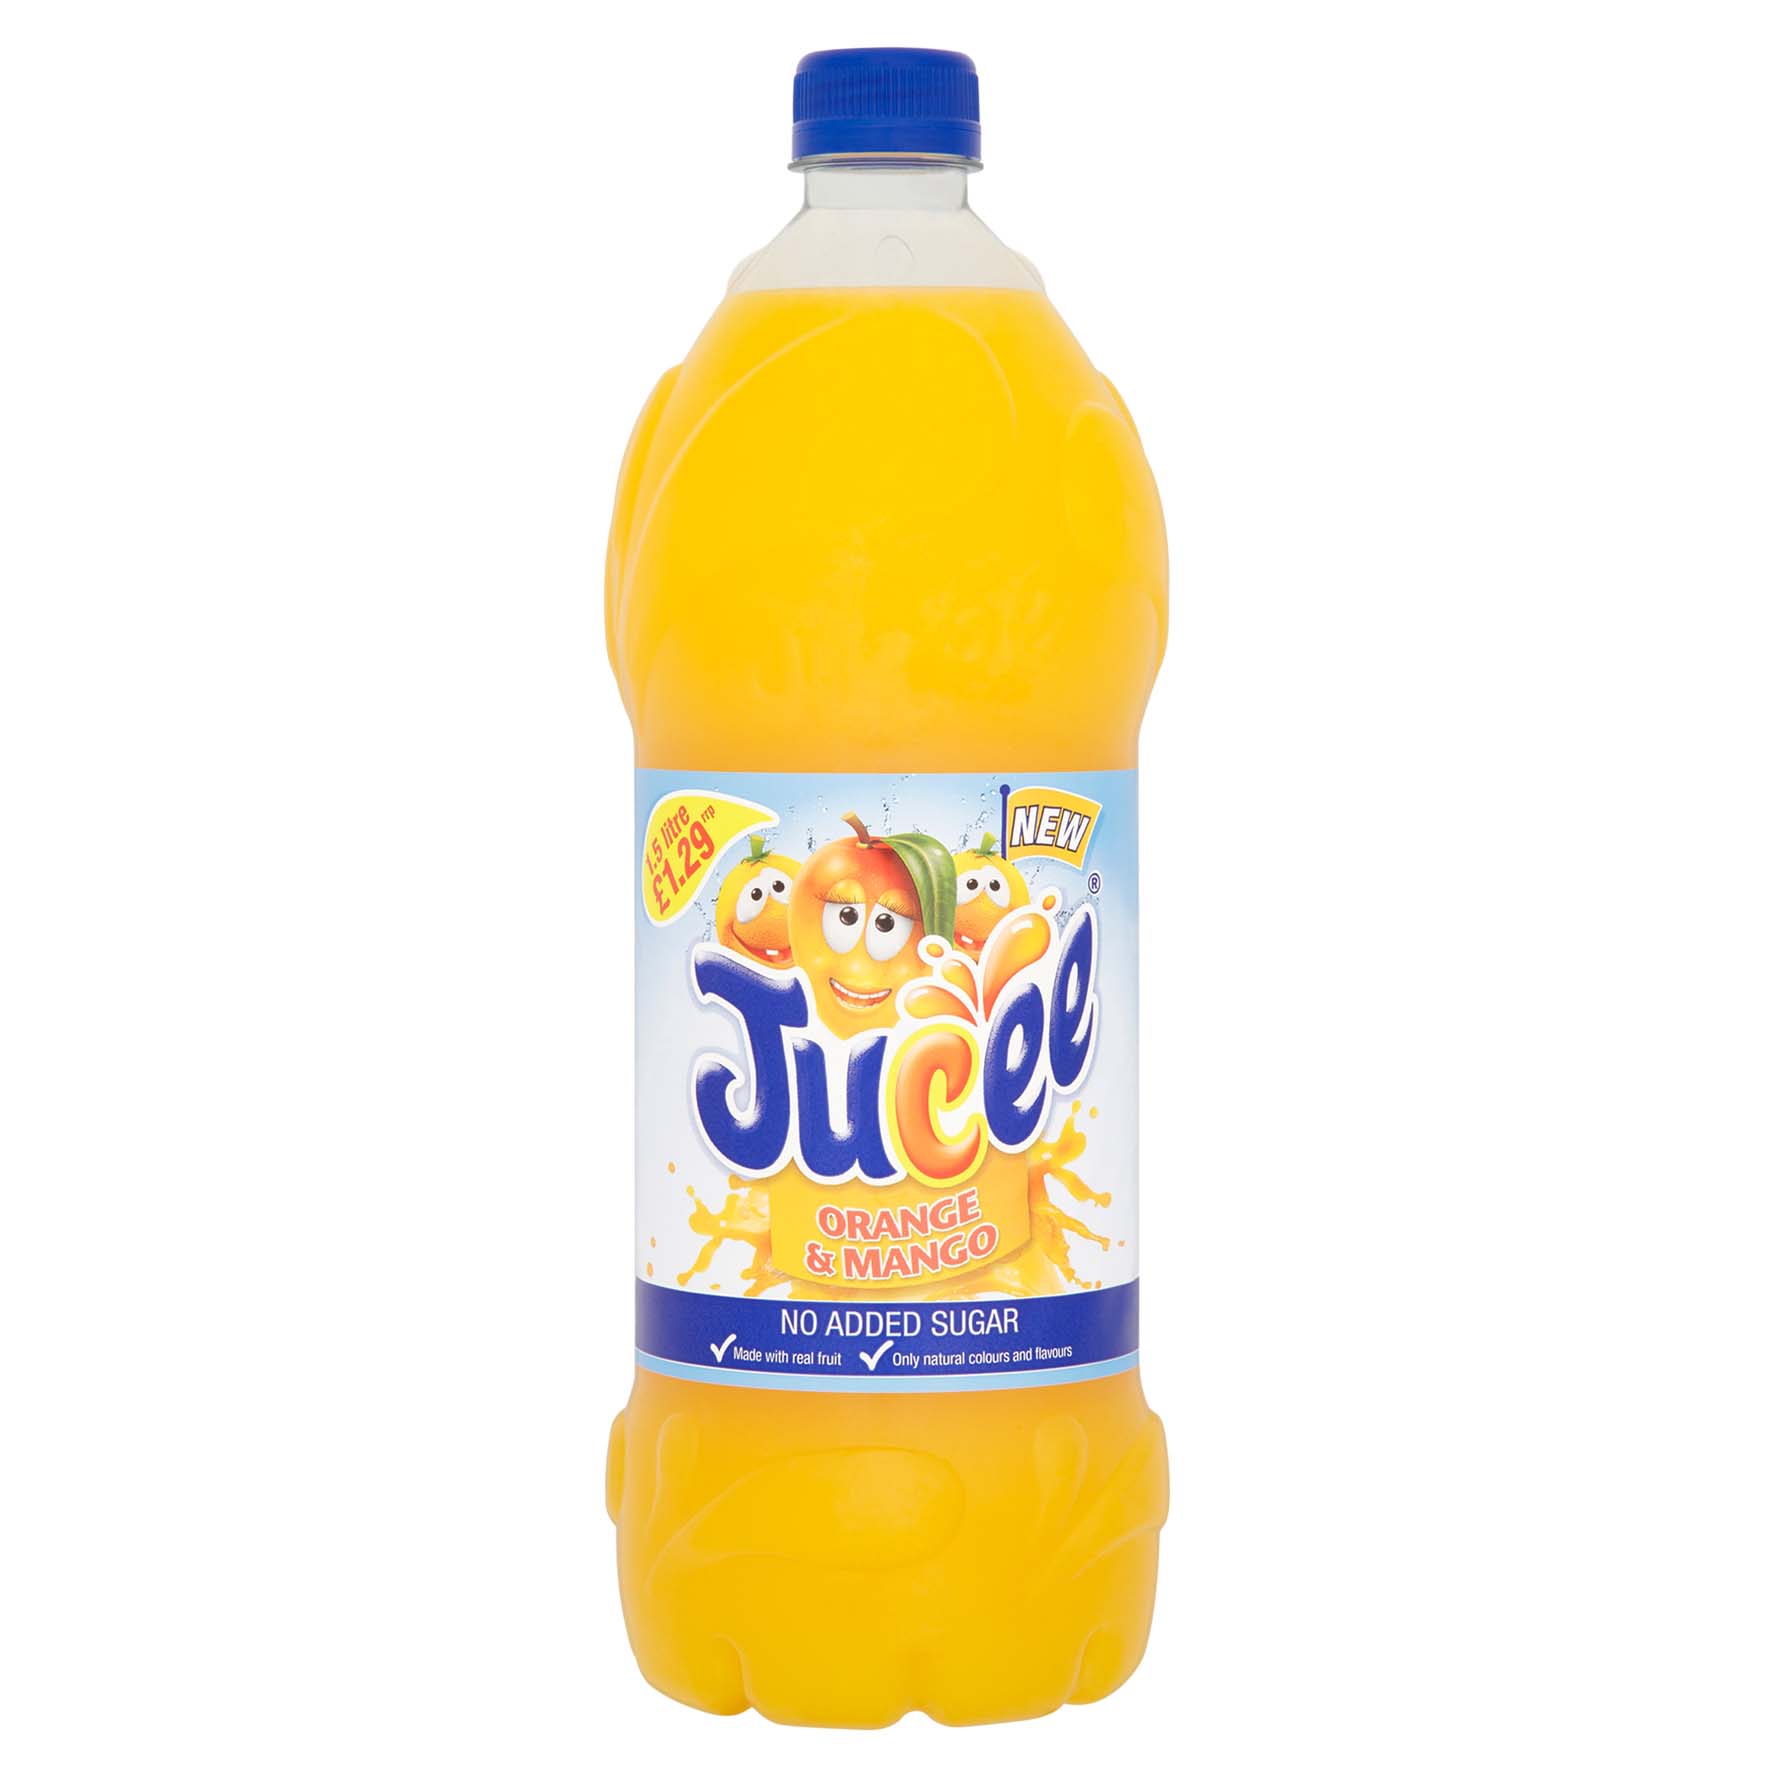 Jucee concentrado naranja-mango s/azuc añadido 1,5 l.